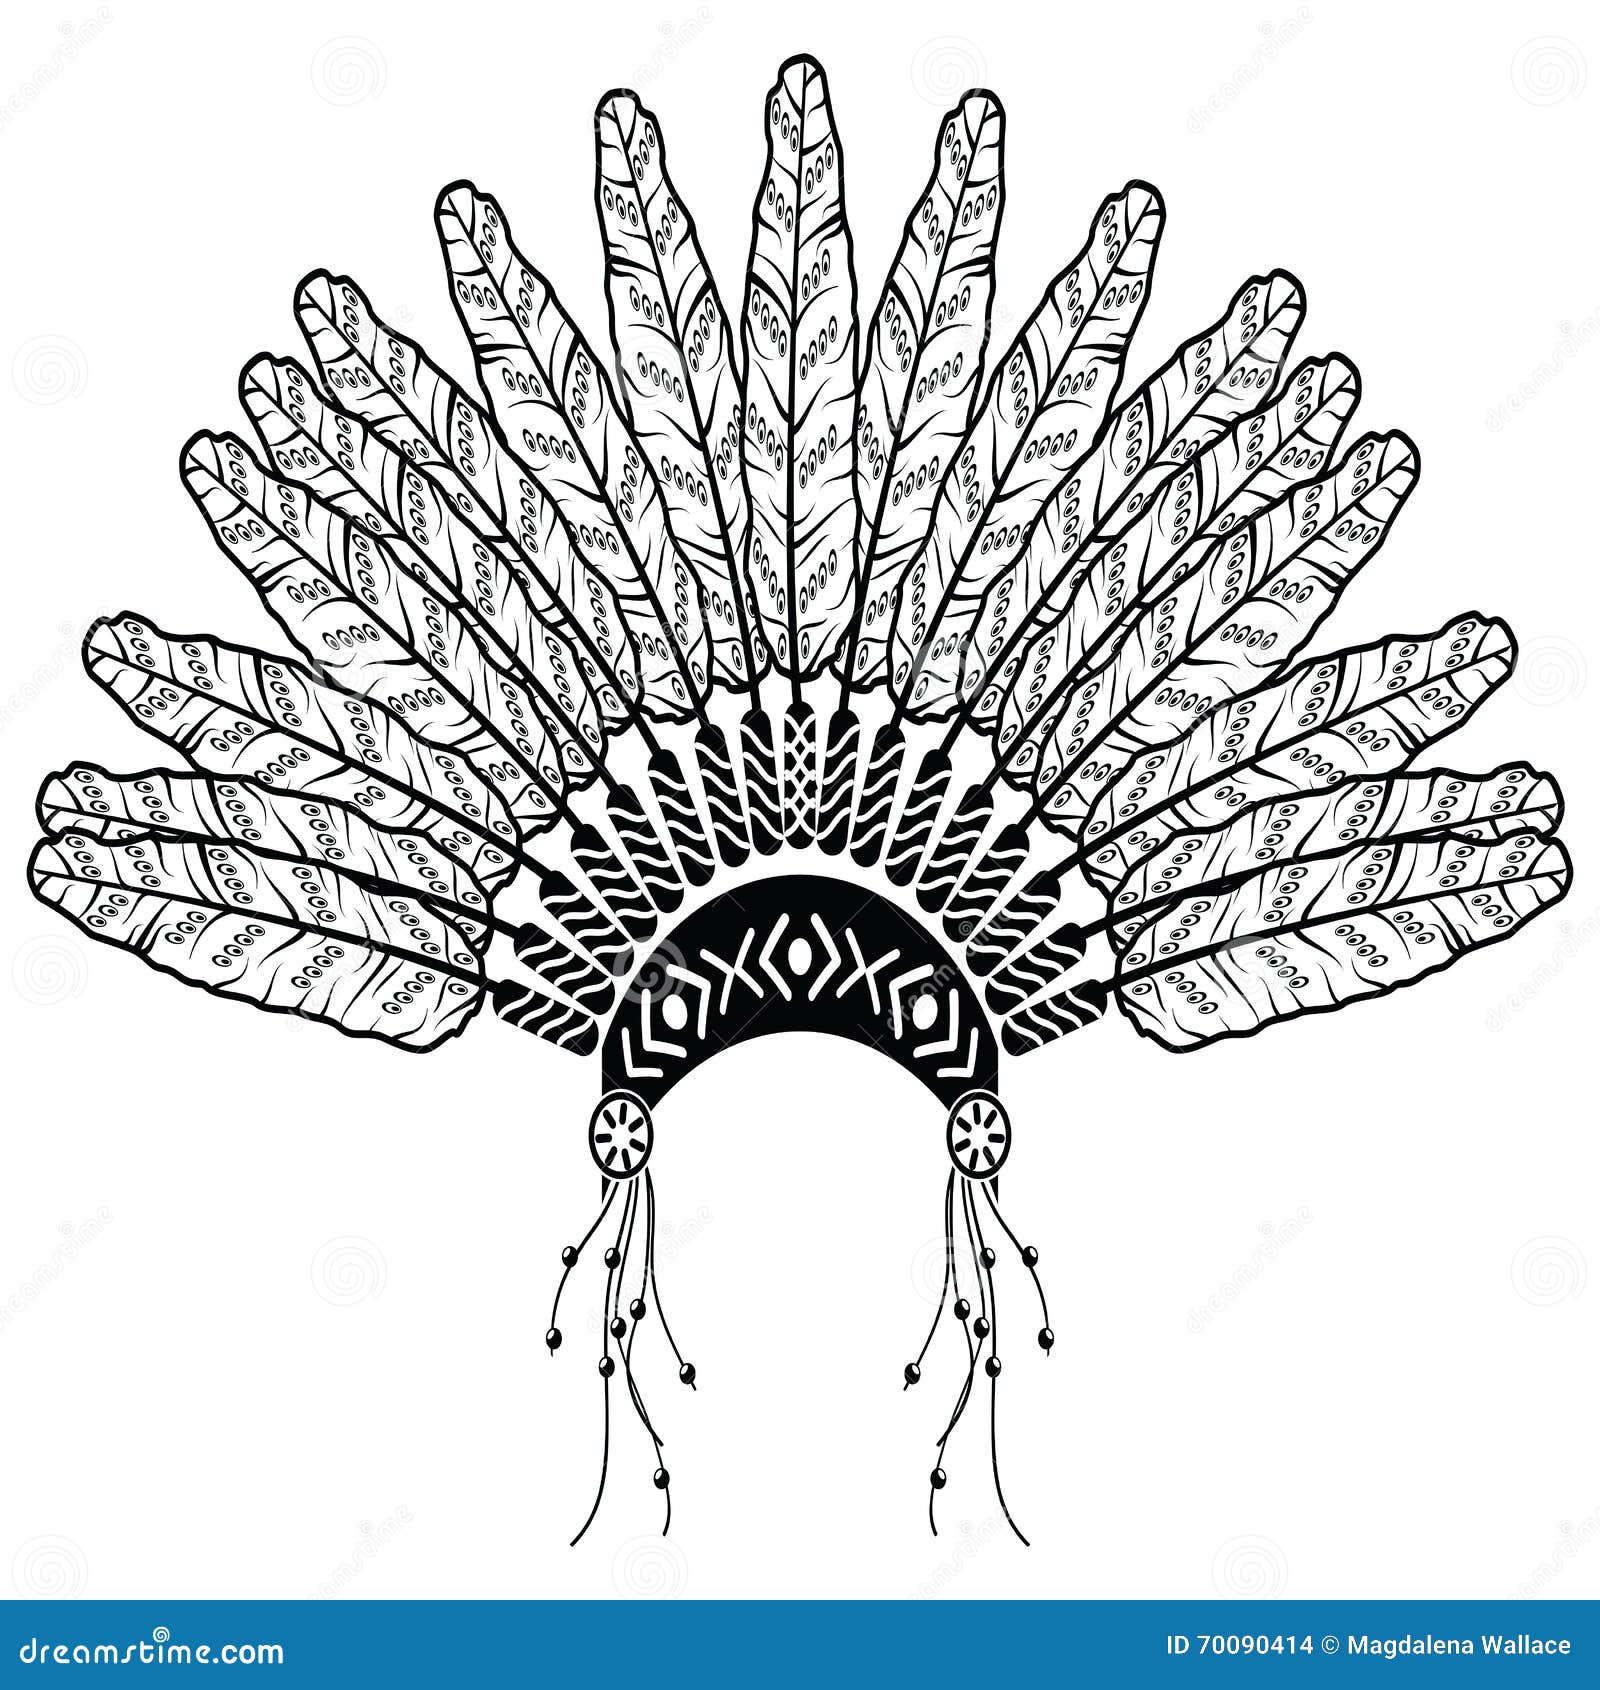 Tocado indio nativo americano con plumas en el estilo de dibujo.